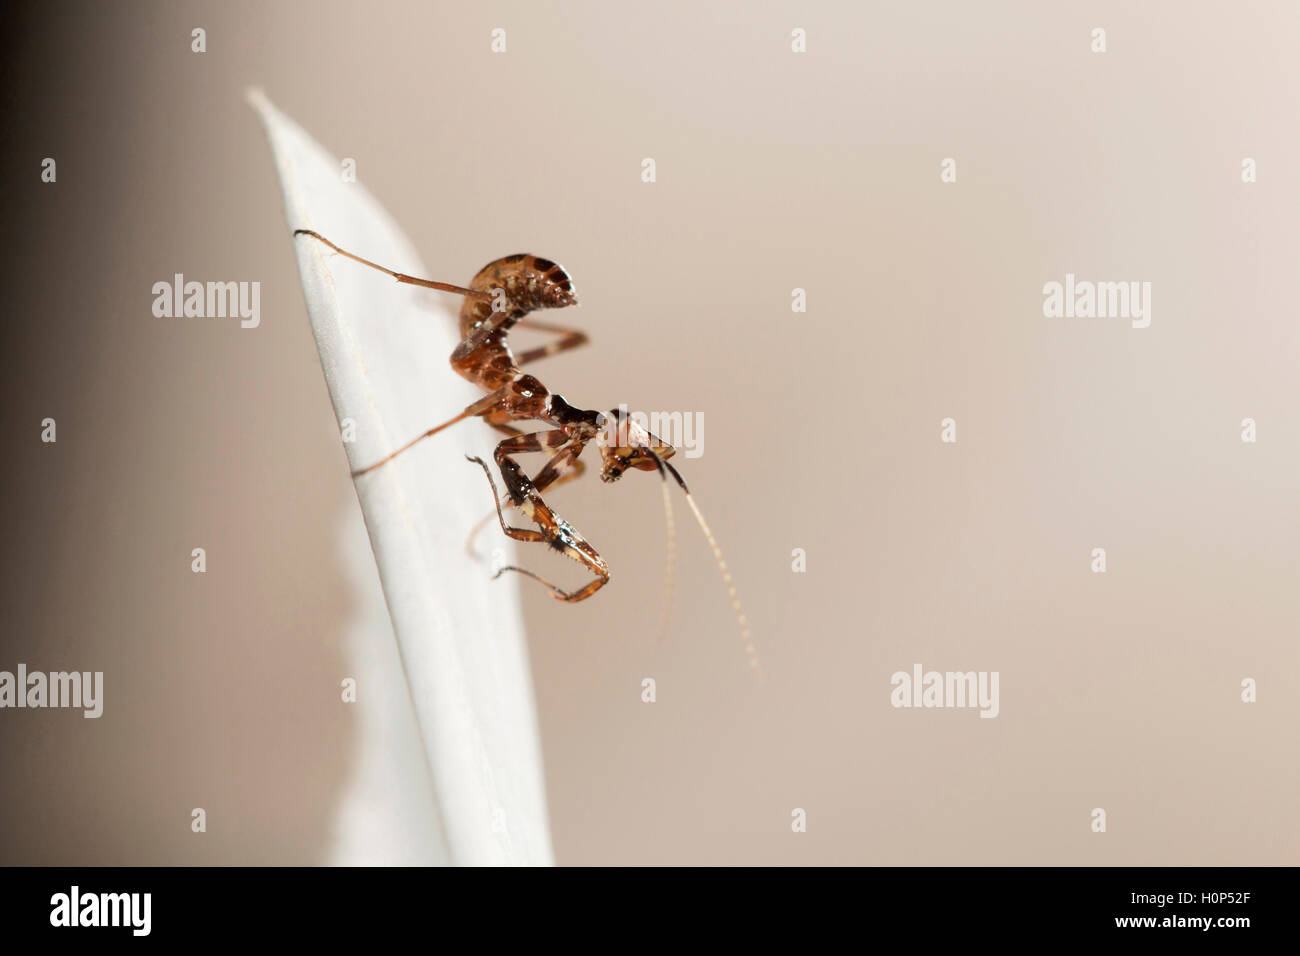 Nymphe mantis bcn, Bangalore, Karnataka. mantis sont des insectes prédateurs. premières étapes sont souvent imite des fourmis. Banque D'Images